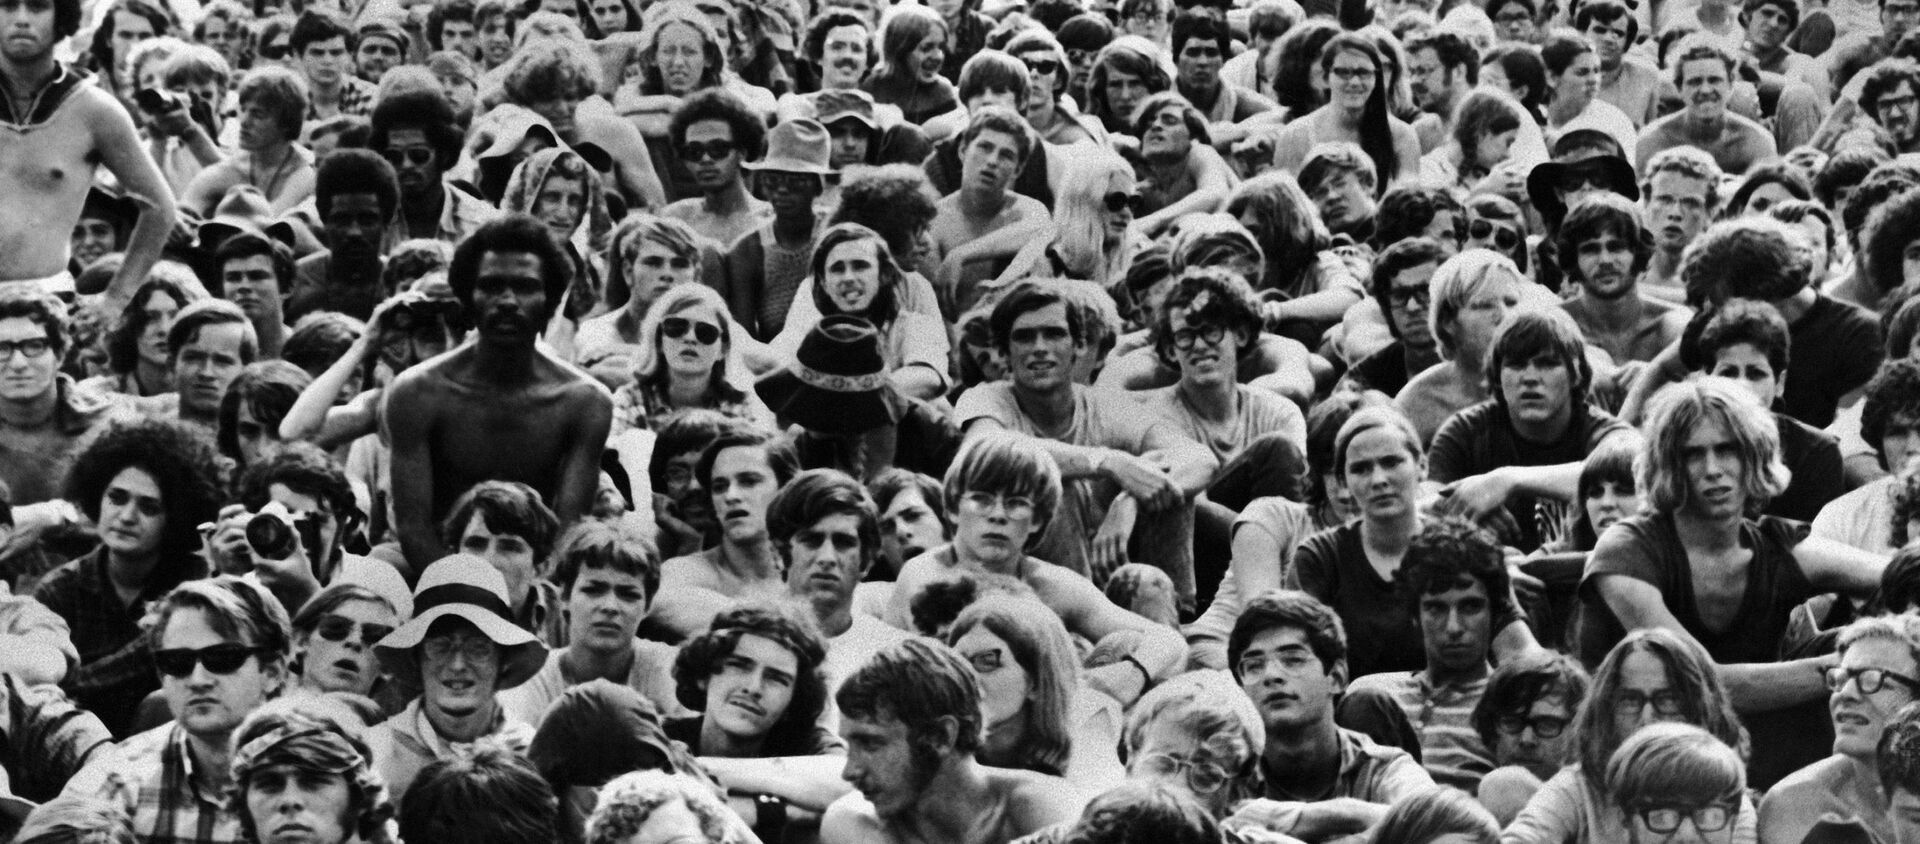 Festival de Woodstock en 1969 - Sputnik Mundo, 1920, 15.08.2019